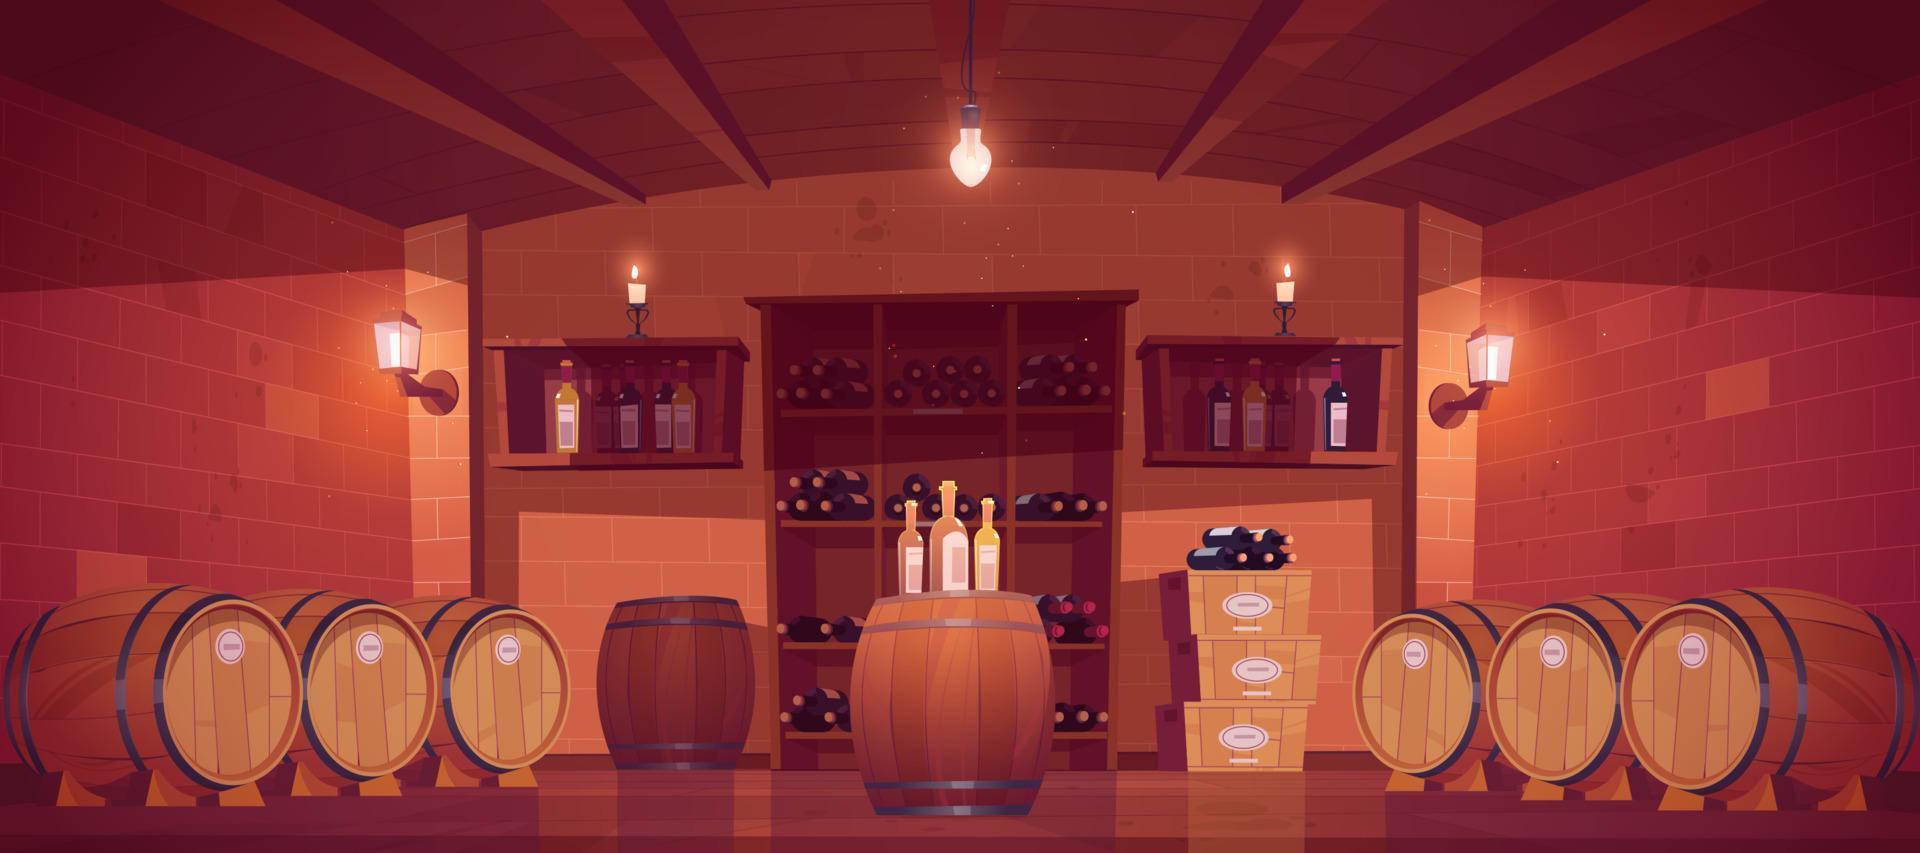 Wine shop, cellar interior with wooden barrels vector